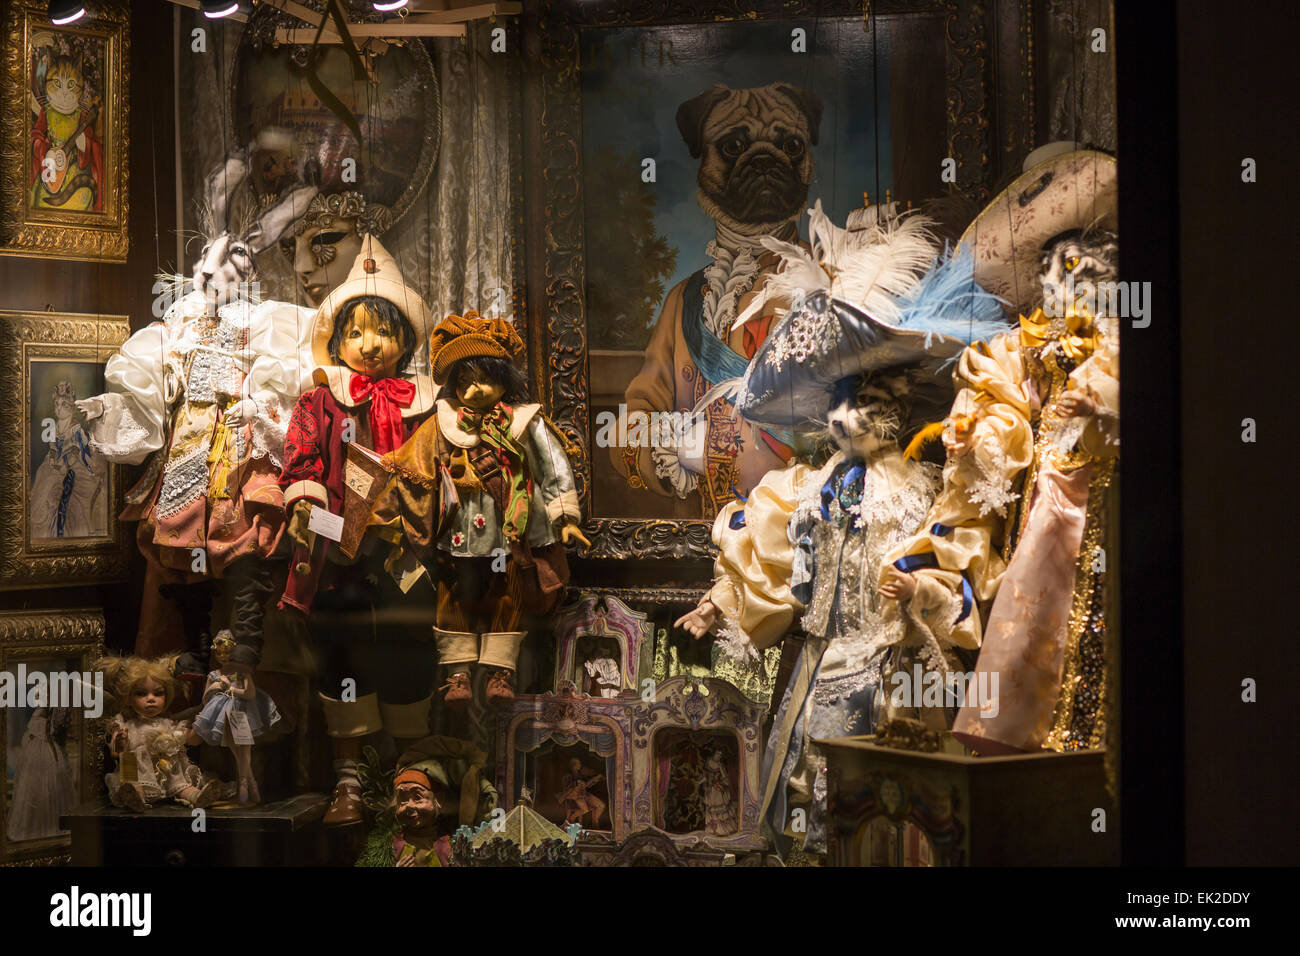 Marionnettes en vitrine, Venise, Italie Banque D'Images